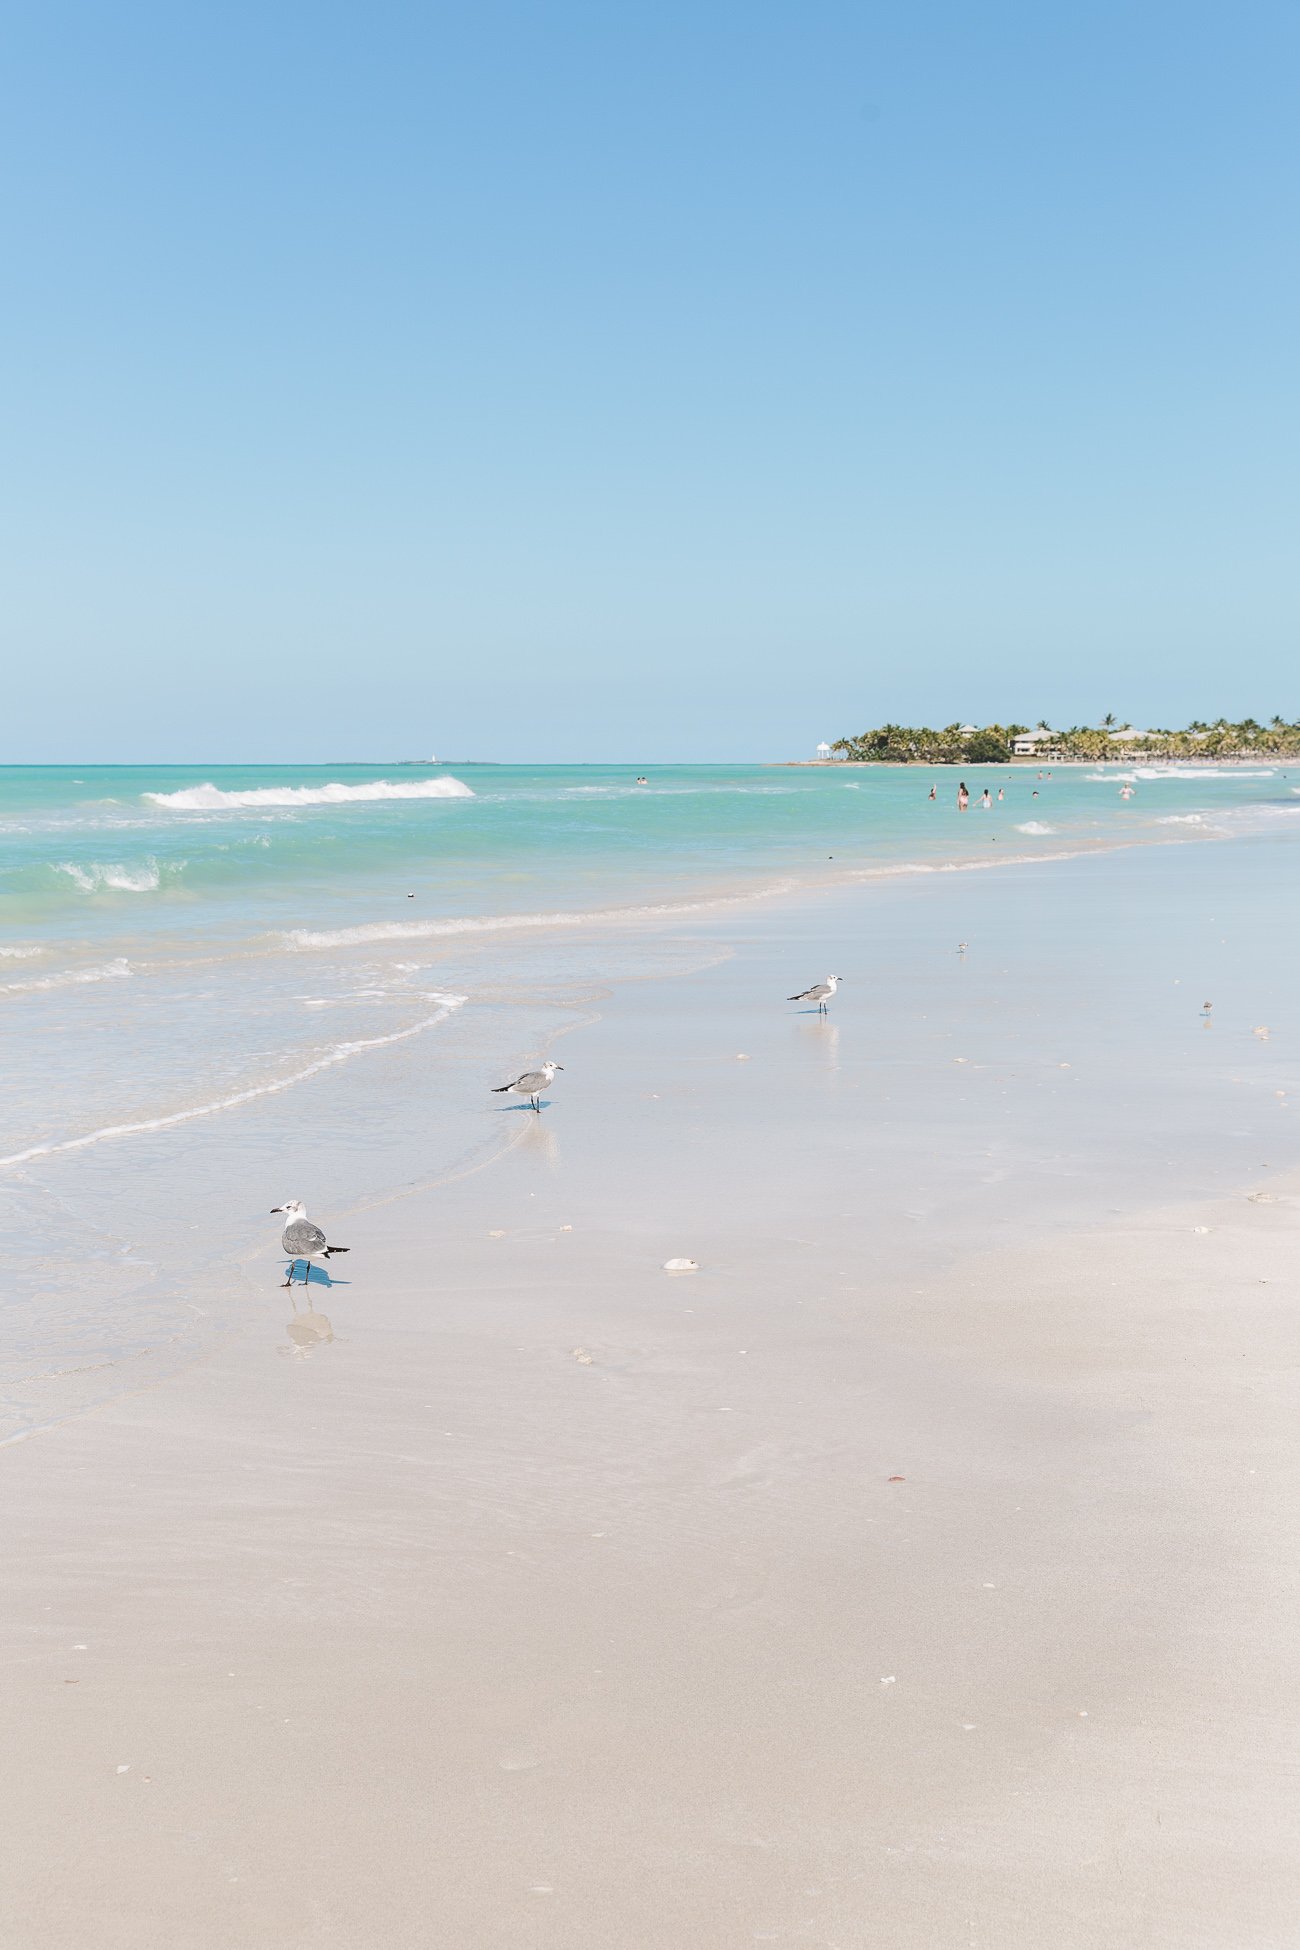 Seagulls at the beach of Varadero Cuba